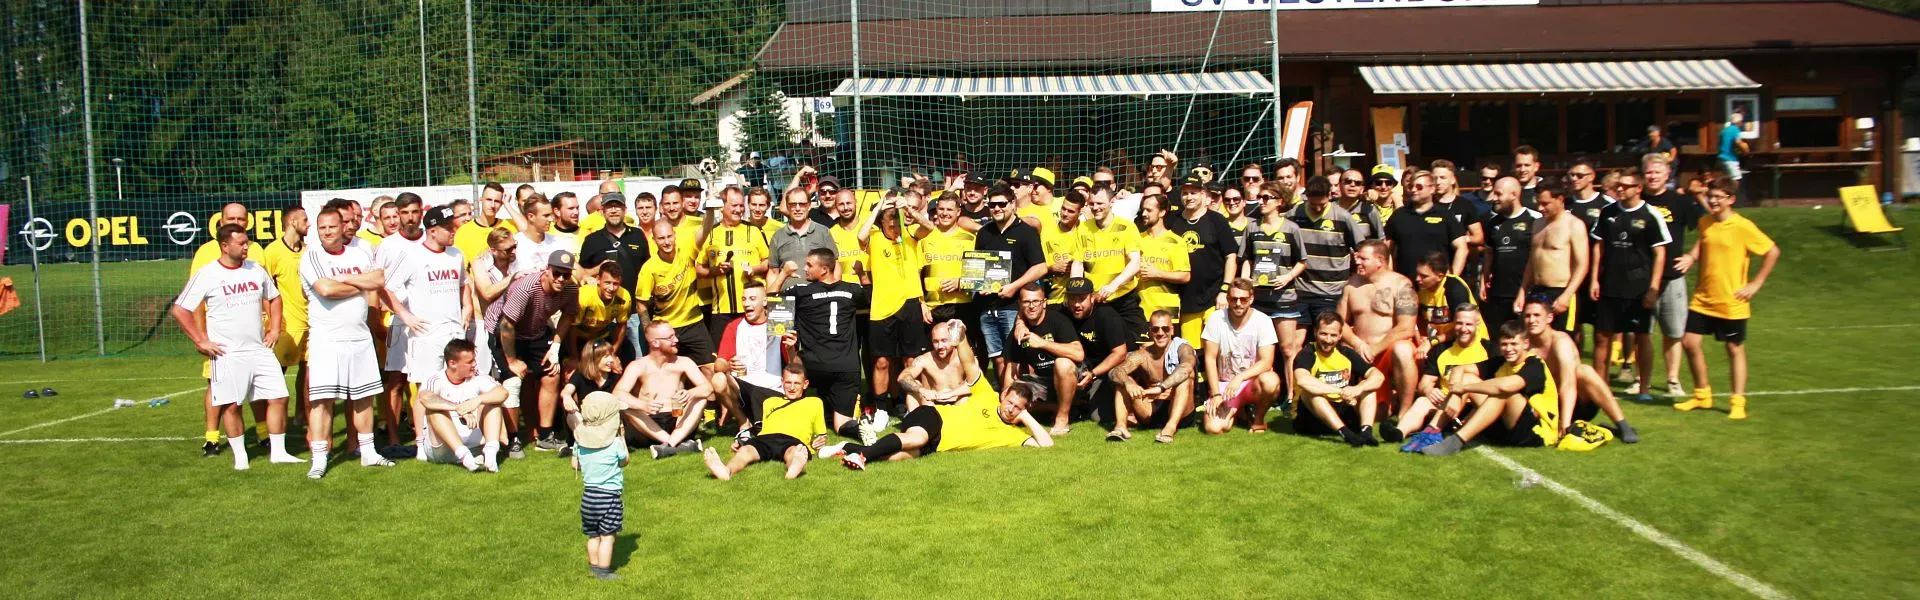 BVB Fanclubturnier Gruppenfoto